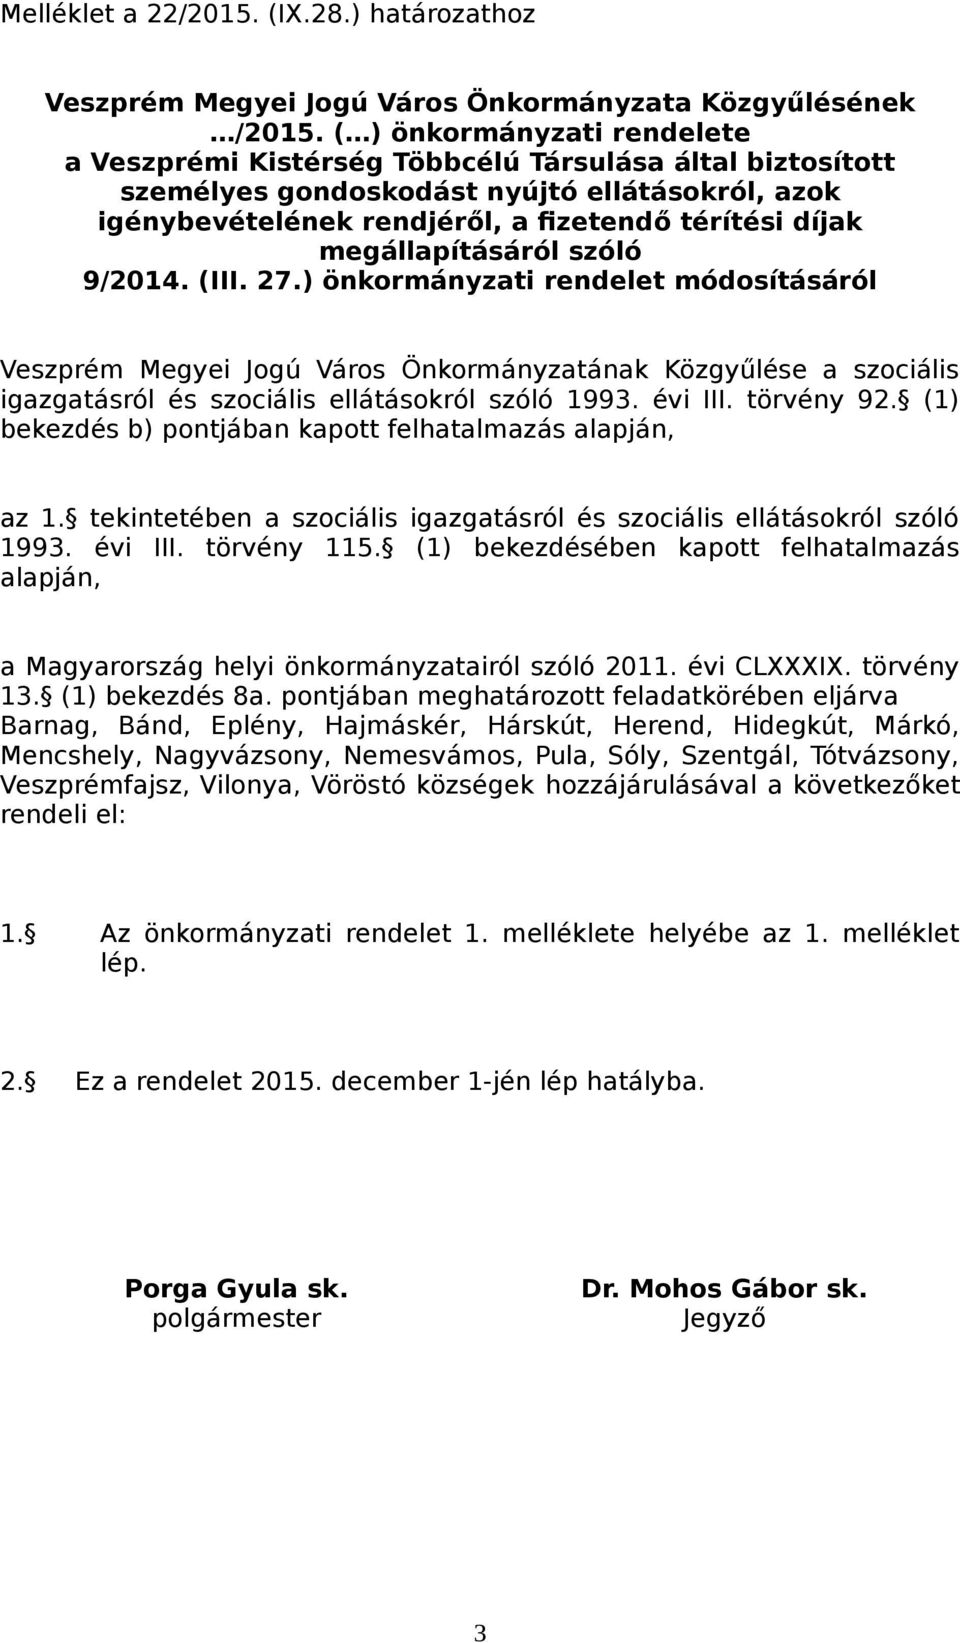 szóló /0. (III..) önkormányzati rendelet módosításáról Veszprém Megyei Jogú Város Önkormányzatának Közgyűlése a szociális igazgatásról és szociális ellátásokról szóló. évi III. törvény.